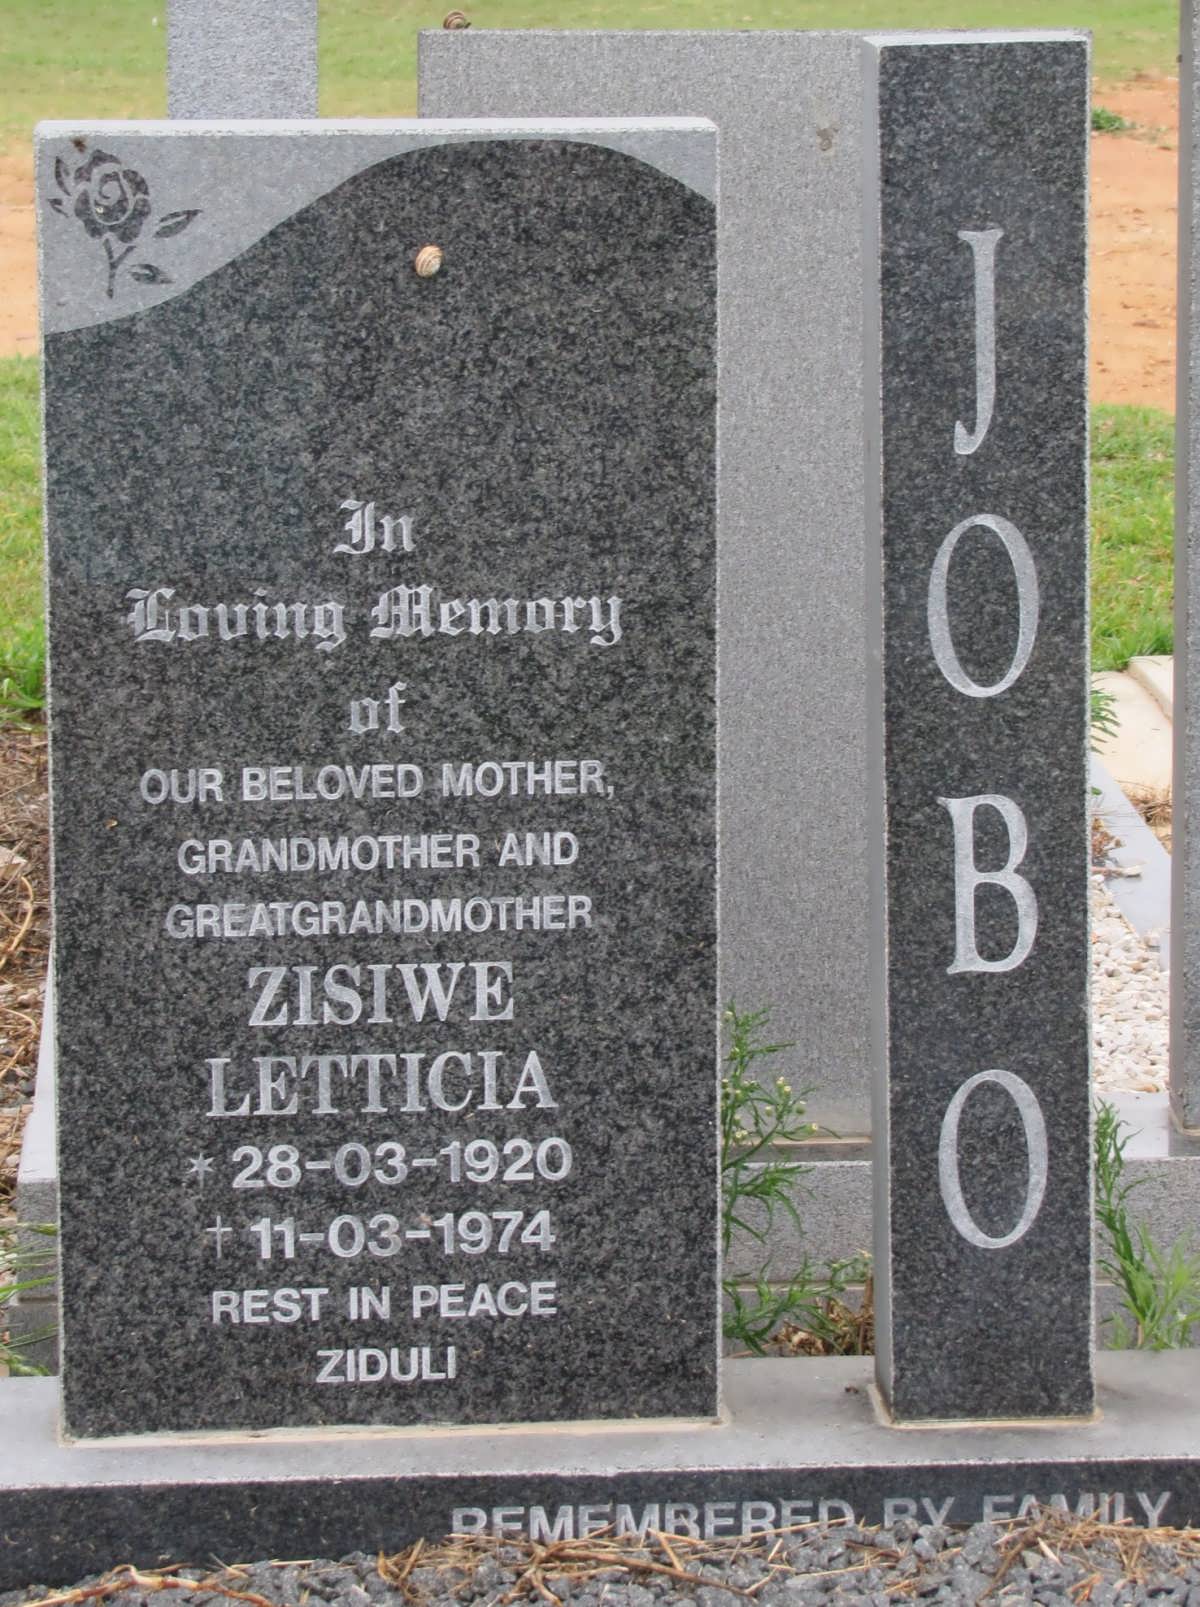 JOBO Zisiwe Letticia 1920-1974